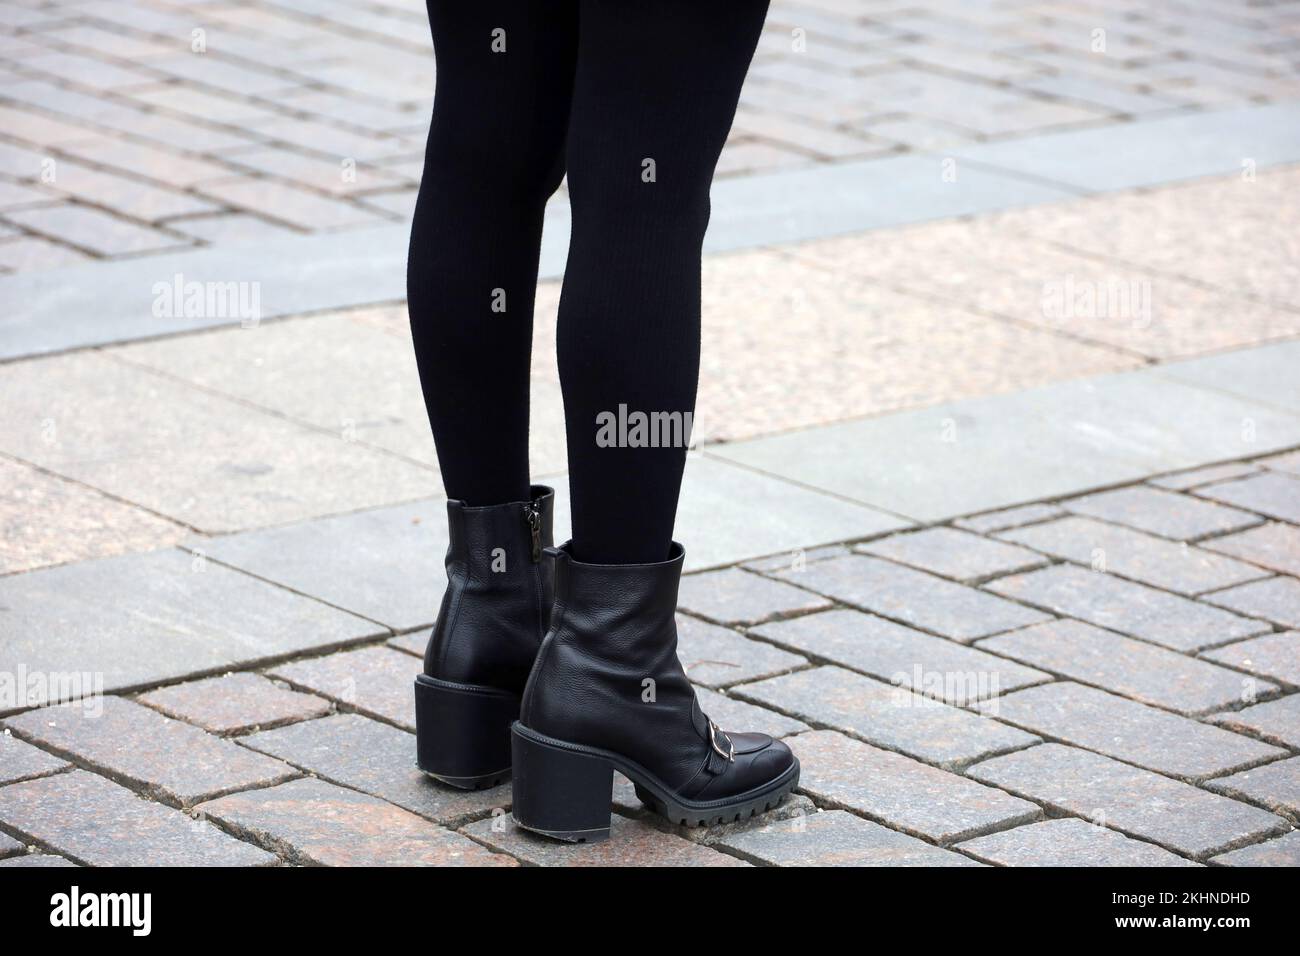 Jambes de femme en pantyhose chaud noir et chaussures sur talons hauts. Fille debout dans une rue, la mode dans la ville d'automne Banque D'Images